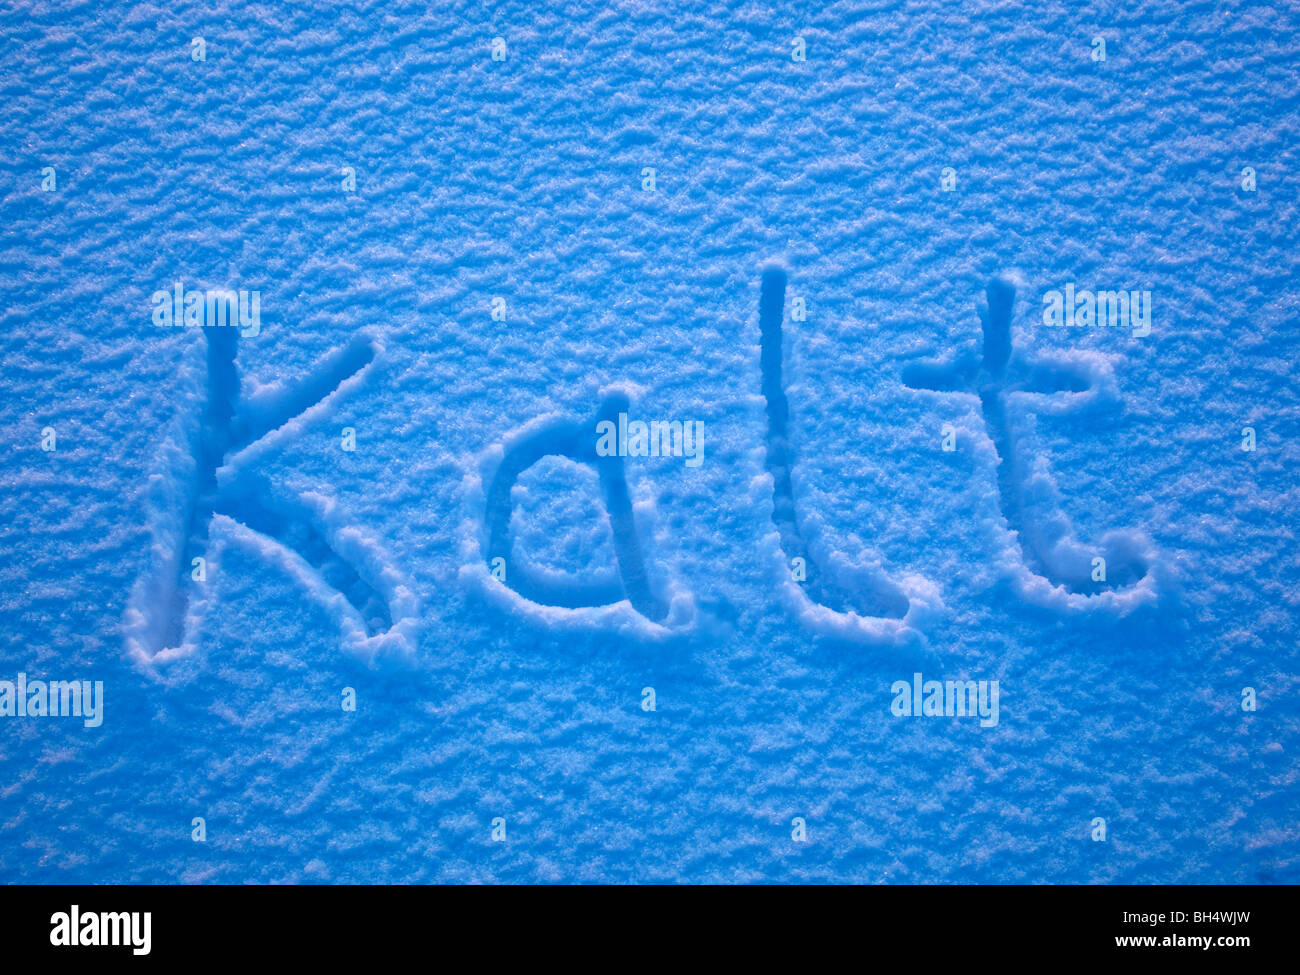 Das deutsche Wort für Kälte - Kalt - in den Schnee geschrieben. Stockfoto